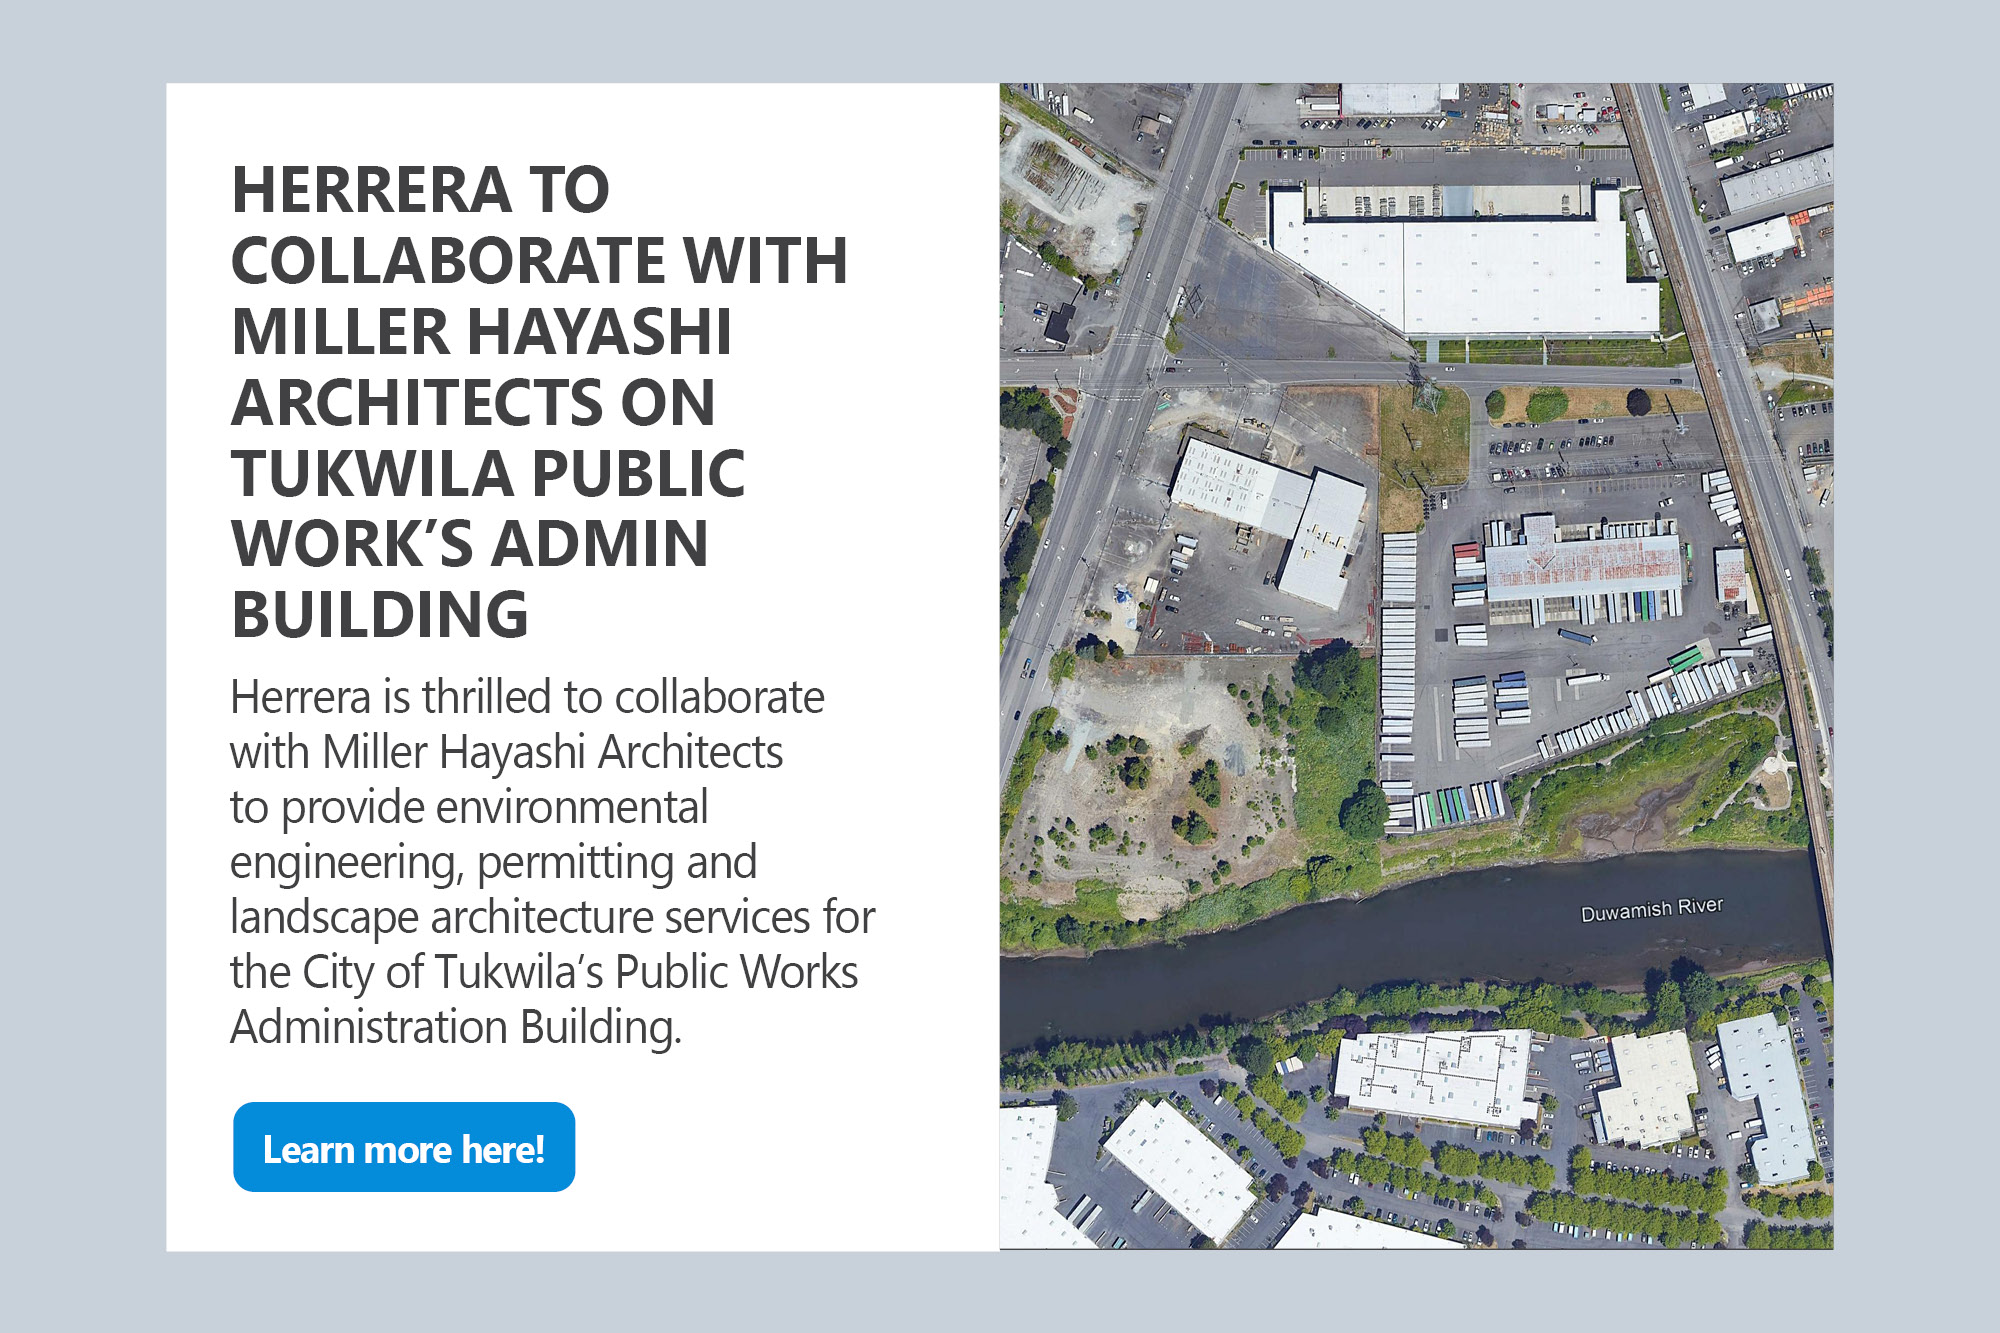 Q4-tukwila-public-work-building